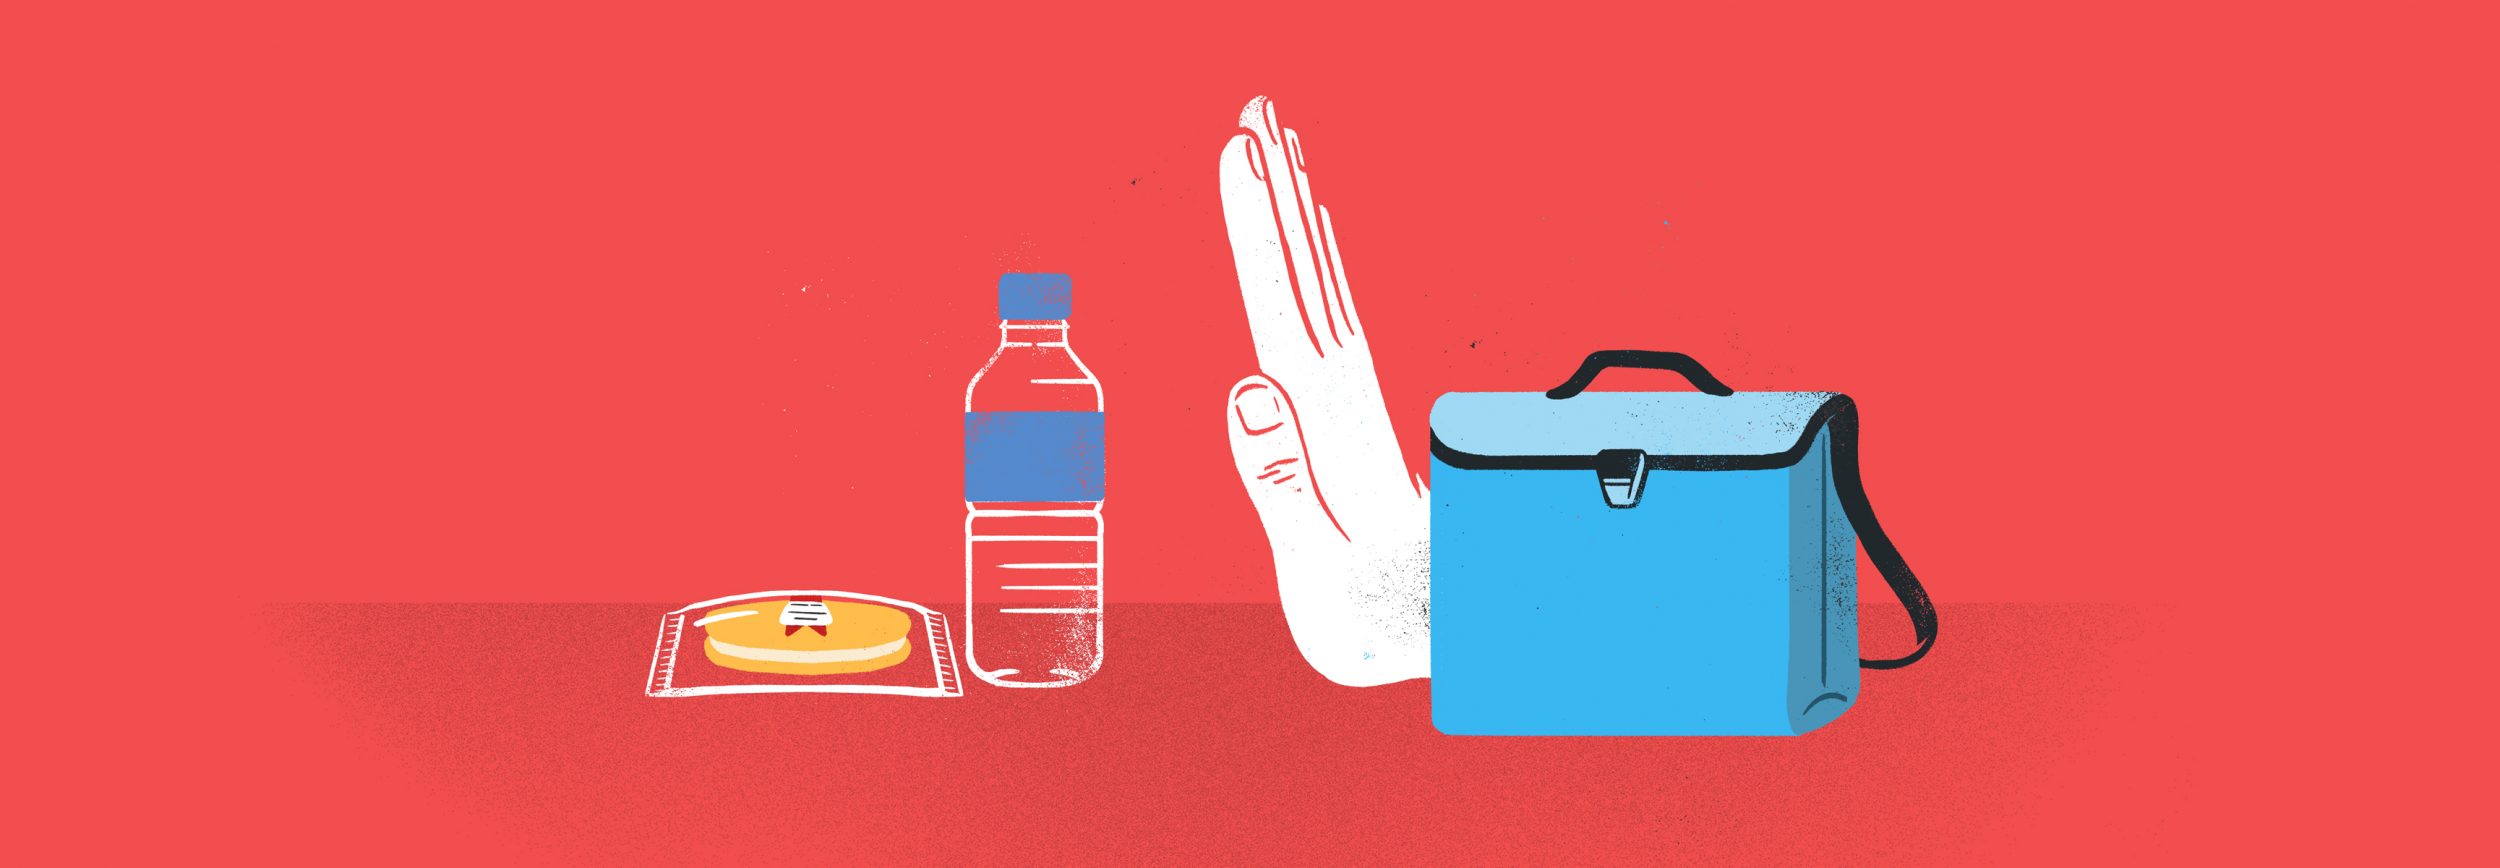 Comment faire une boite à lunch zéro déchet - illustration de Sébastien Thibault